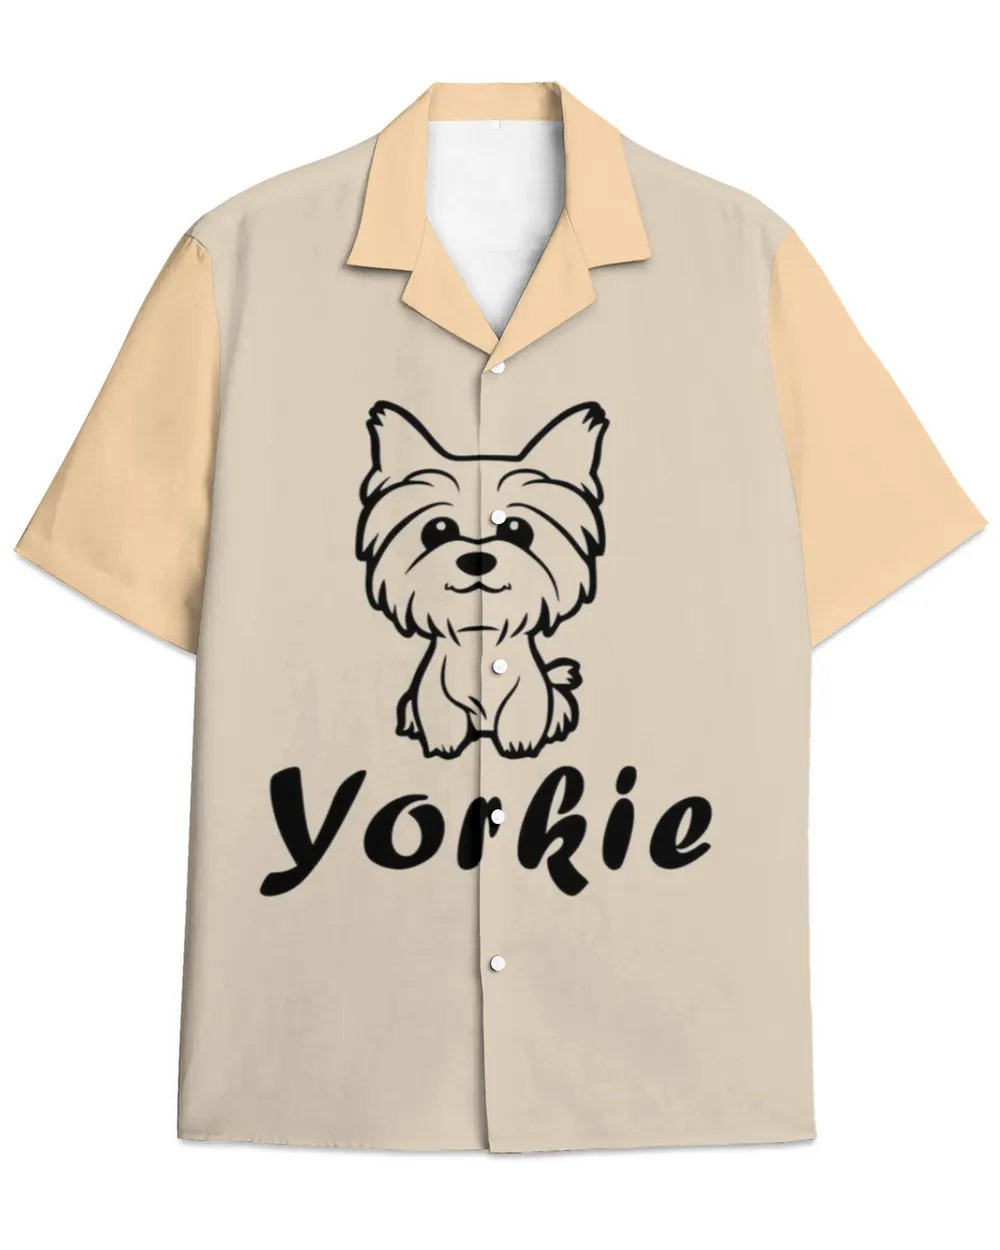 Yorkshire-Hawaiian Shirt